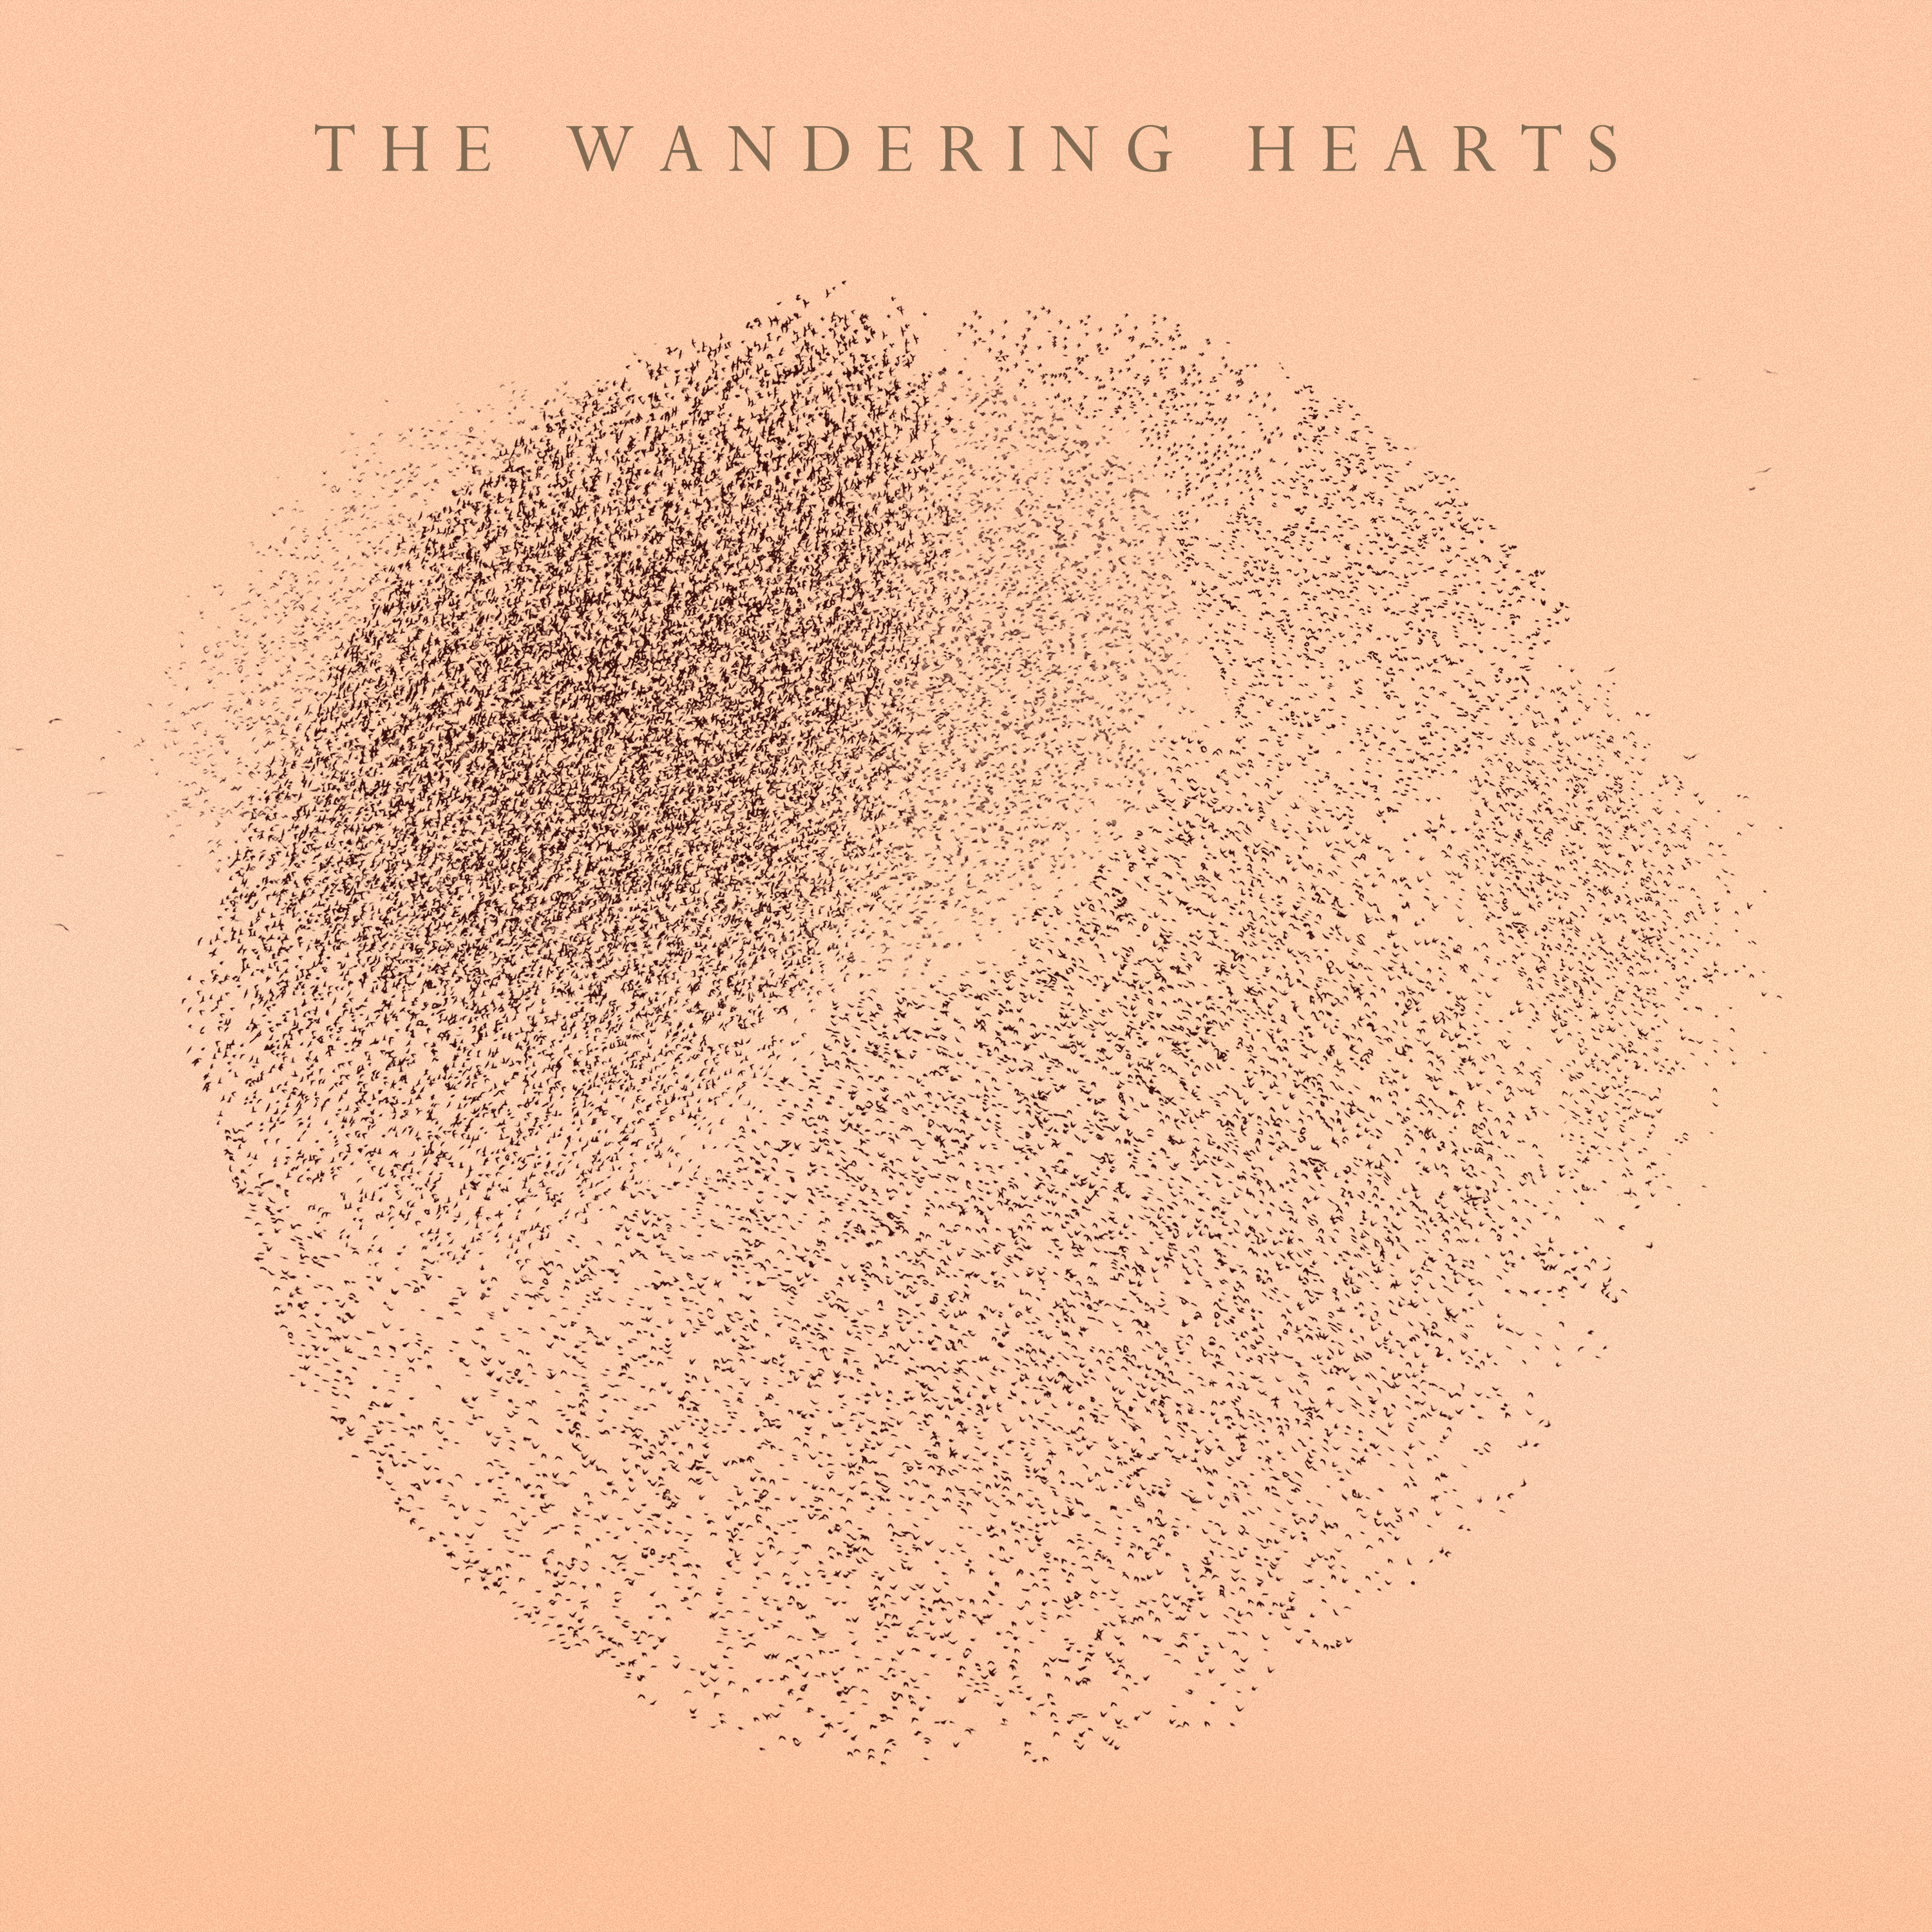 The Wandering Hearts - The Wandering Hearts - CD